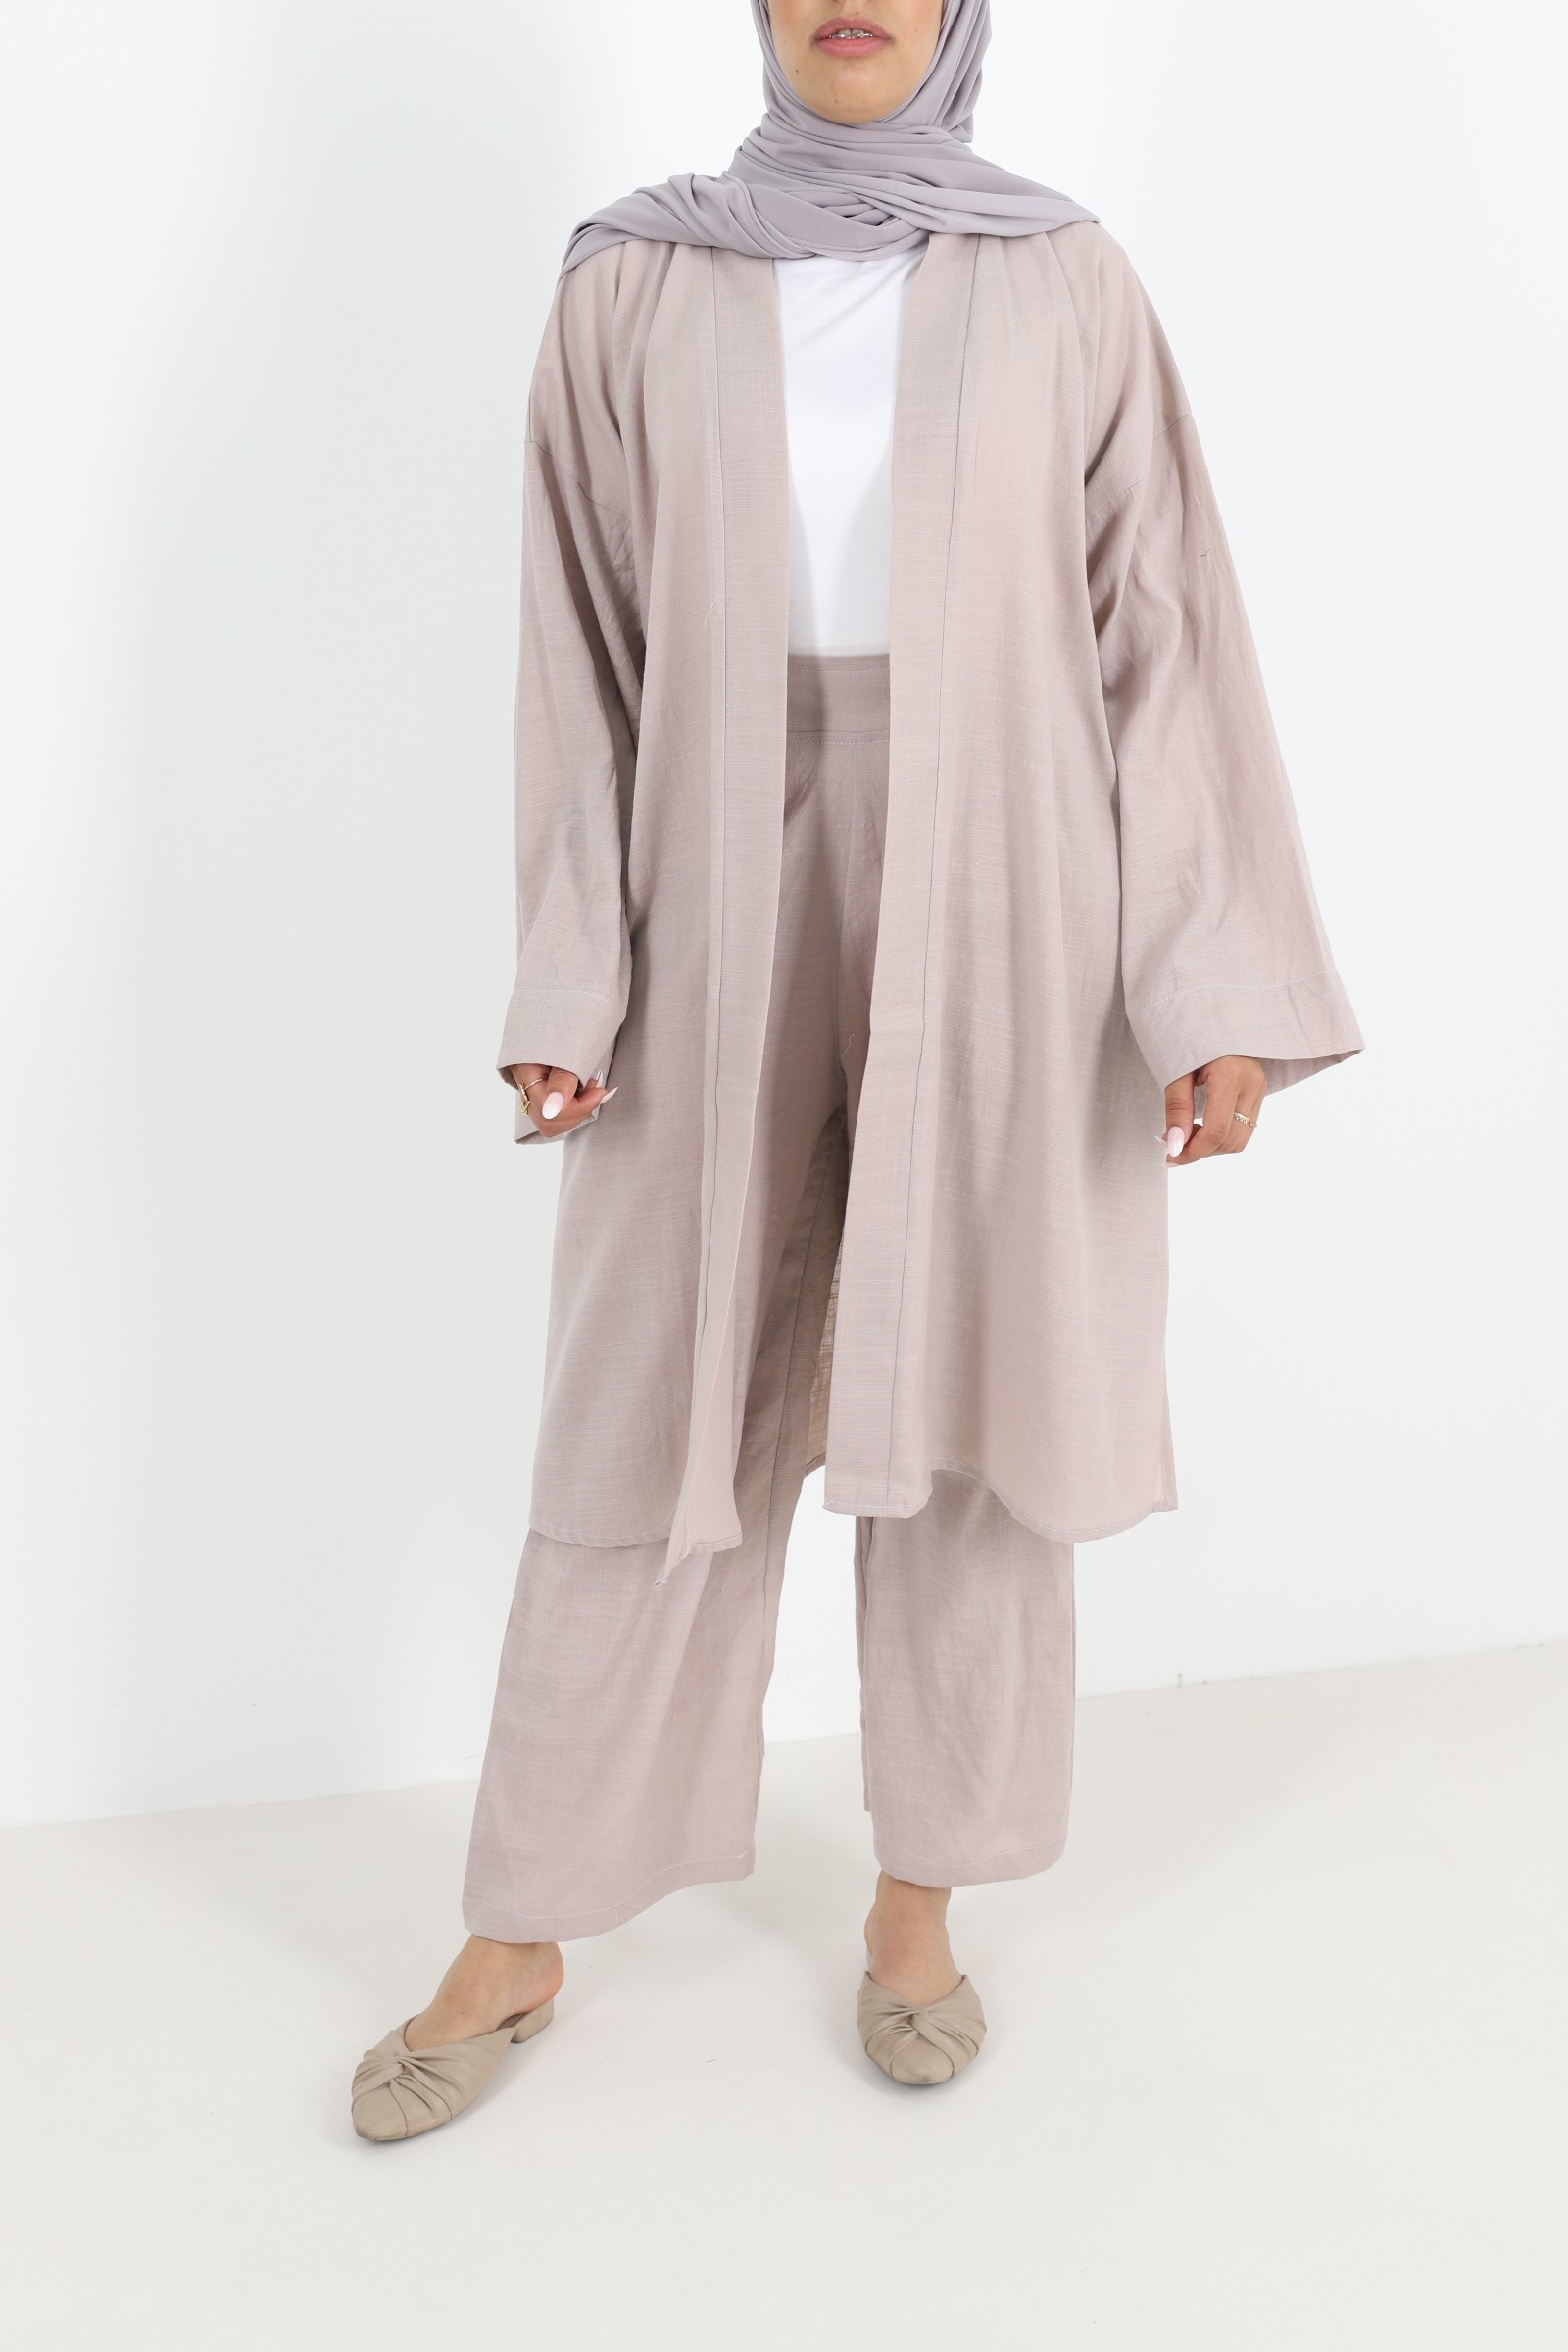 Ensemble pantalon et kimono en lin tenue hijab pour femme musulmane